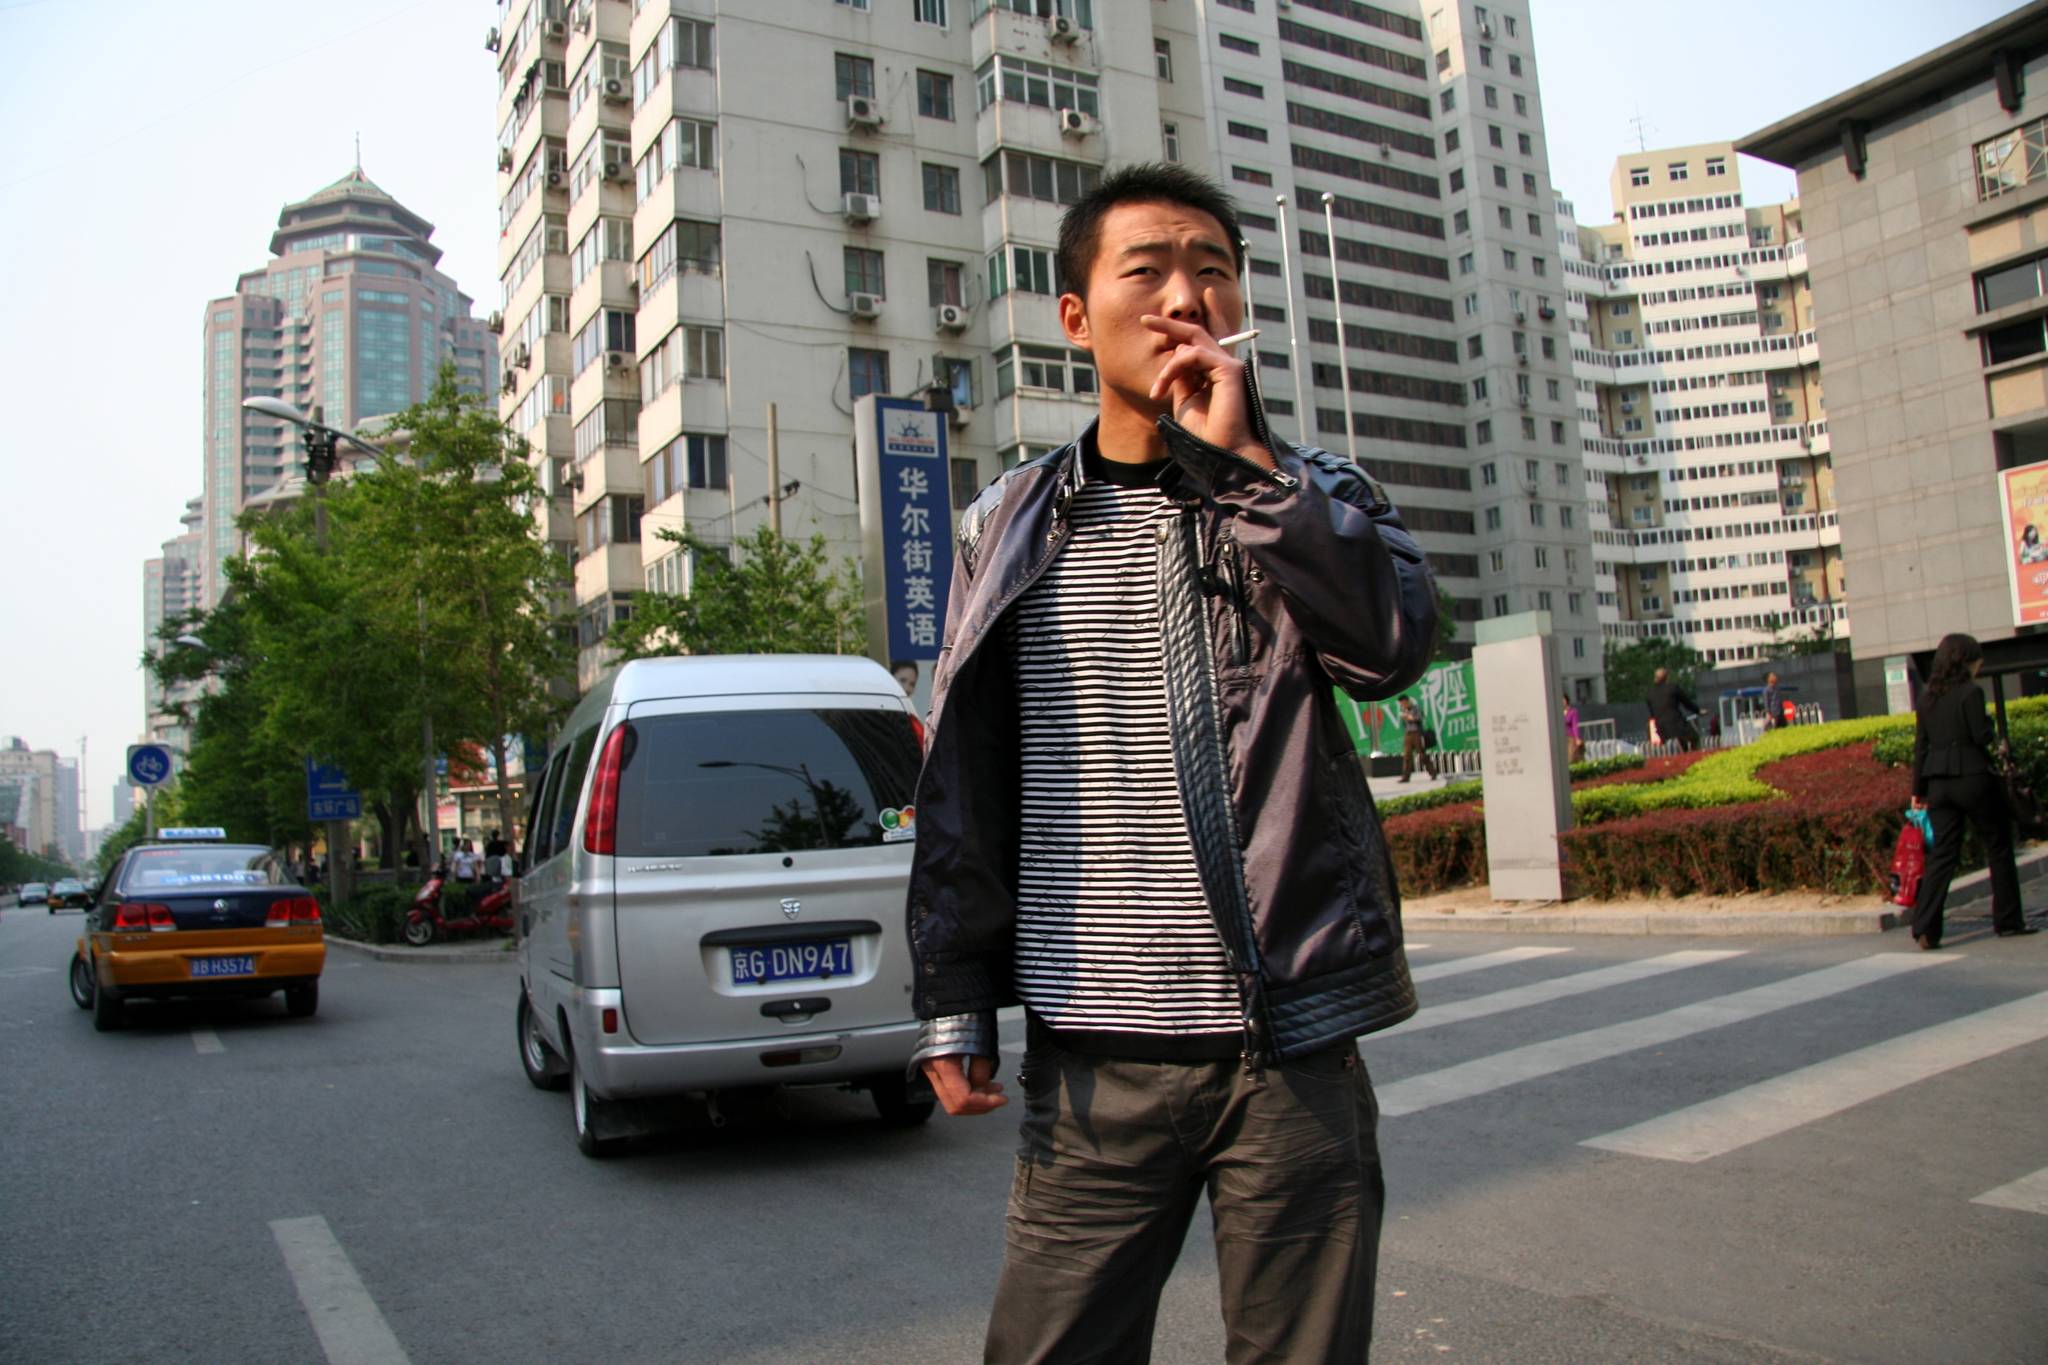 Beijing launches public smoking ban